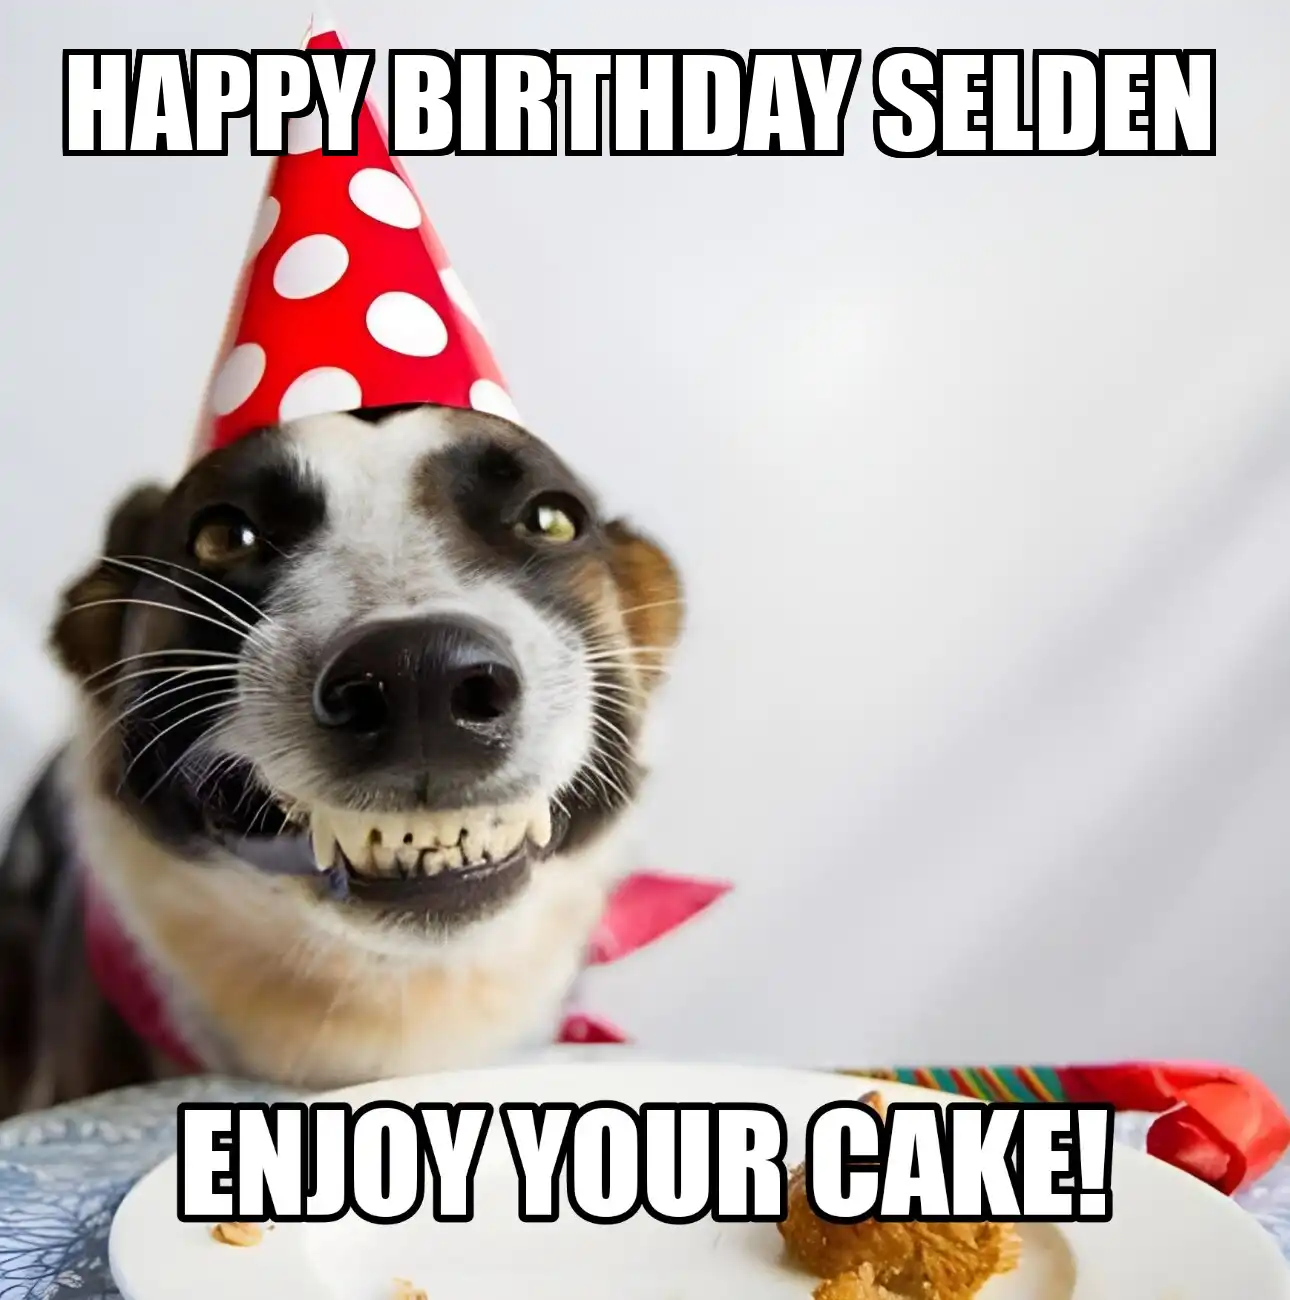 Happy Birthday Selden Enjoy Your Cake Dog Meme